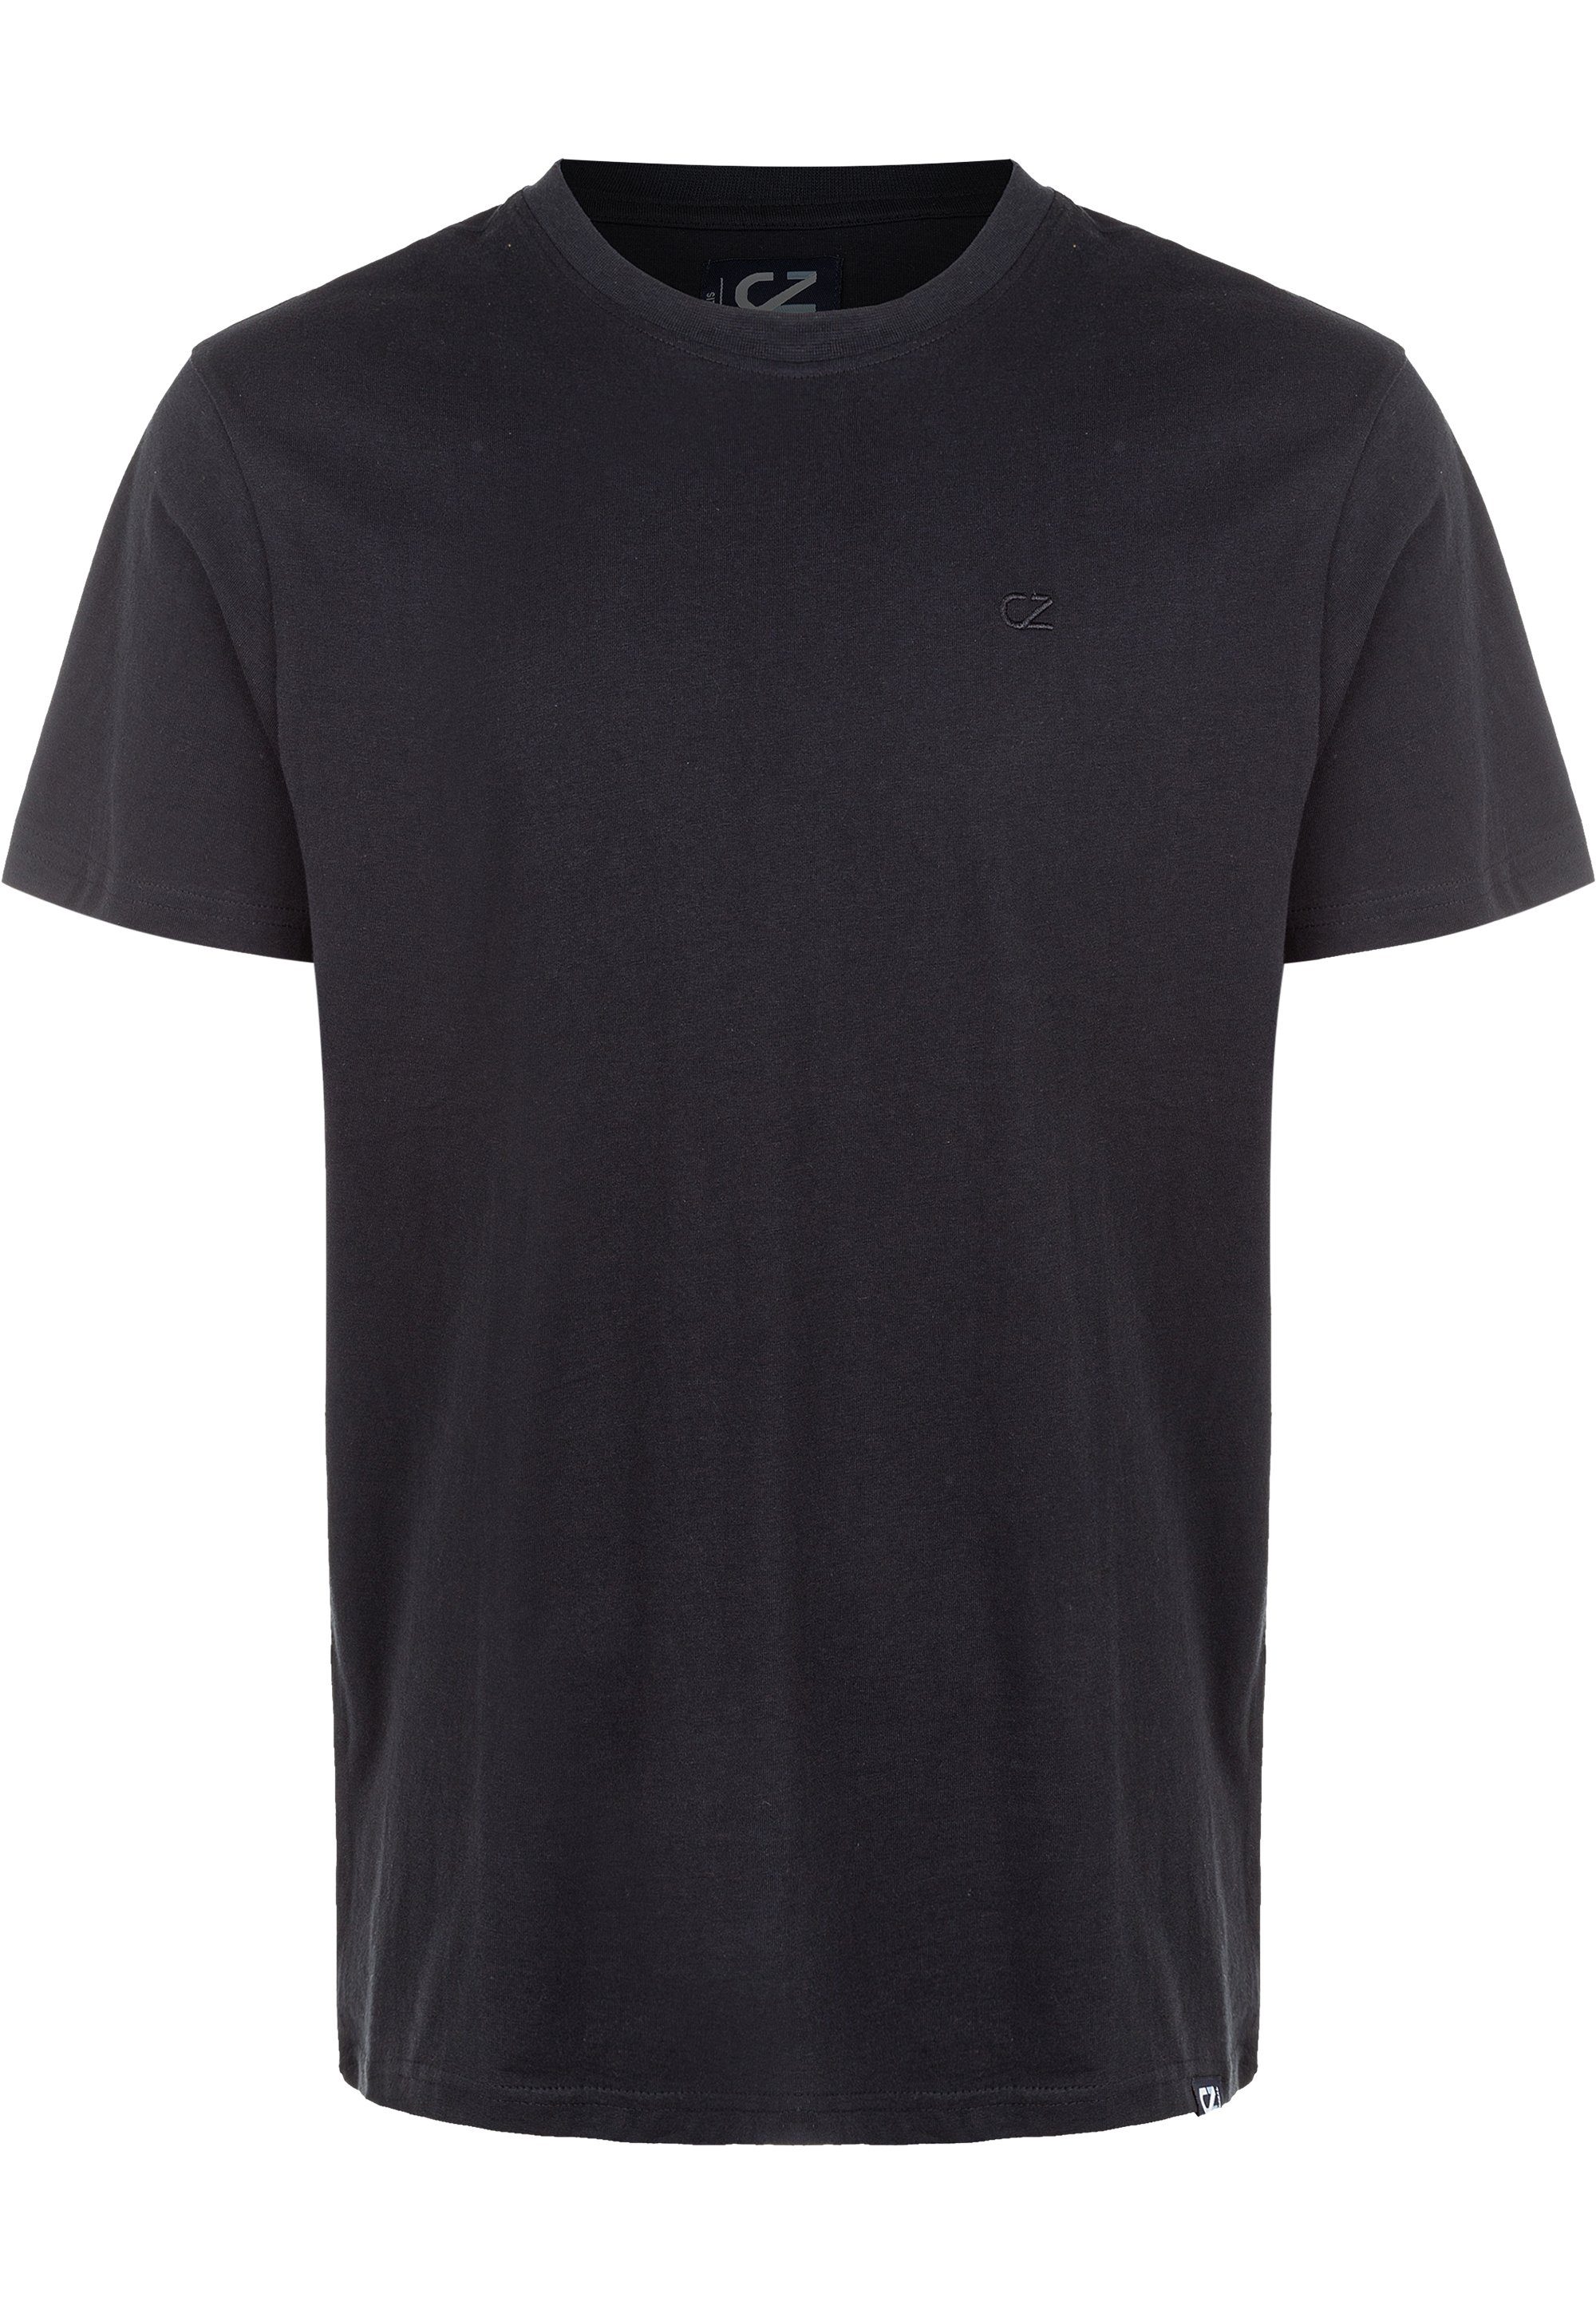 T-Shirt CRUZ reiner schwarz Baumwolle Highmore aus